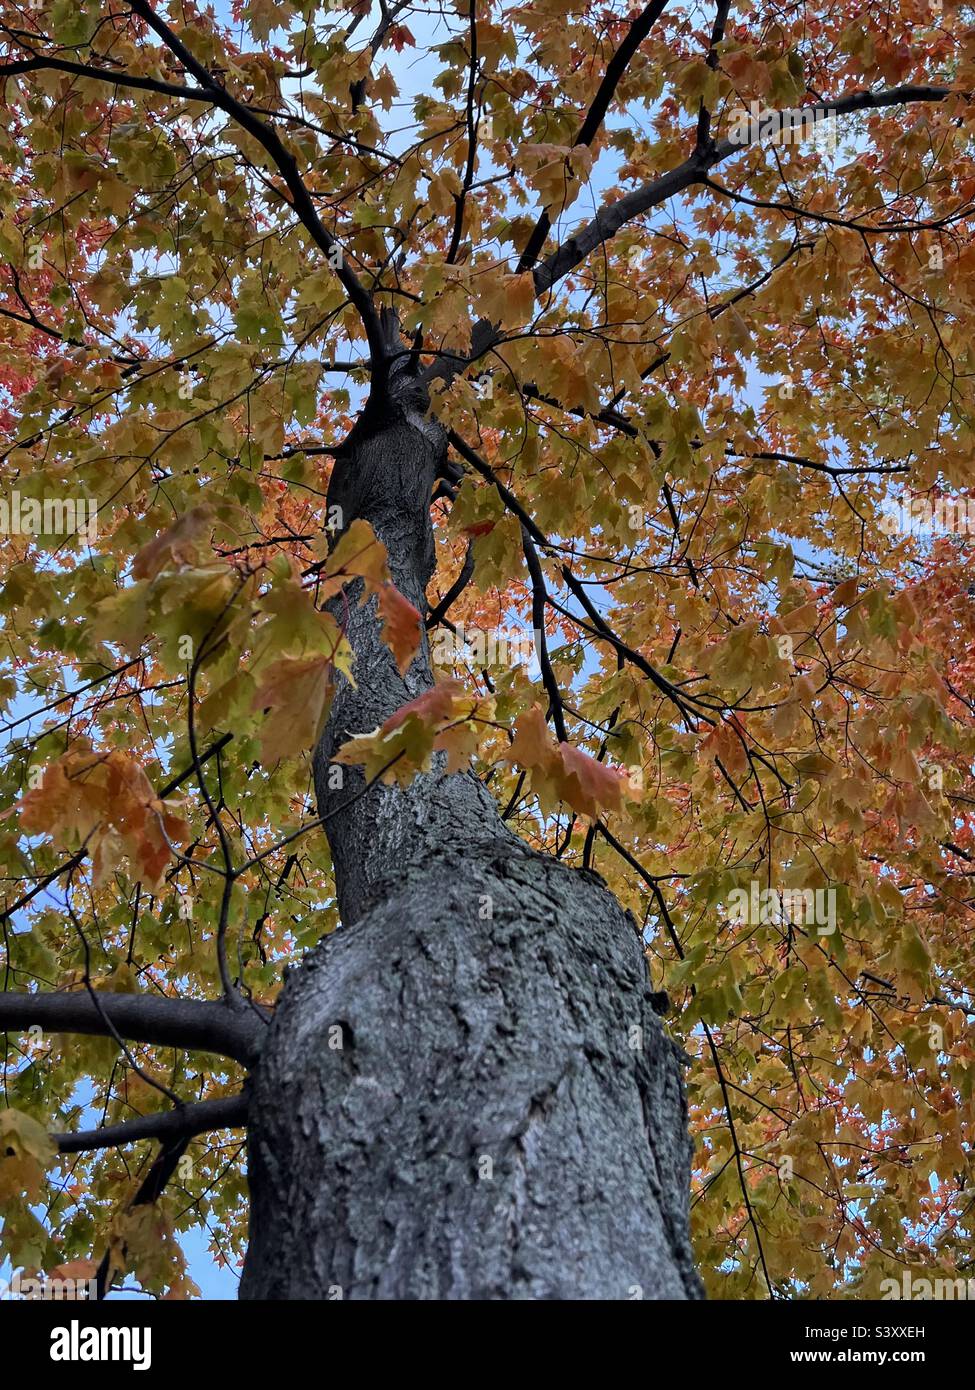 Autumn tree Stock Photo